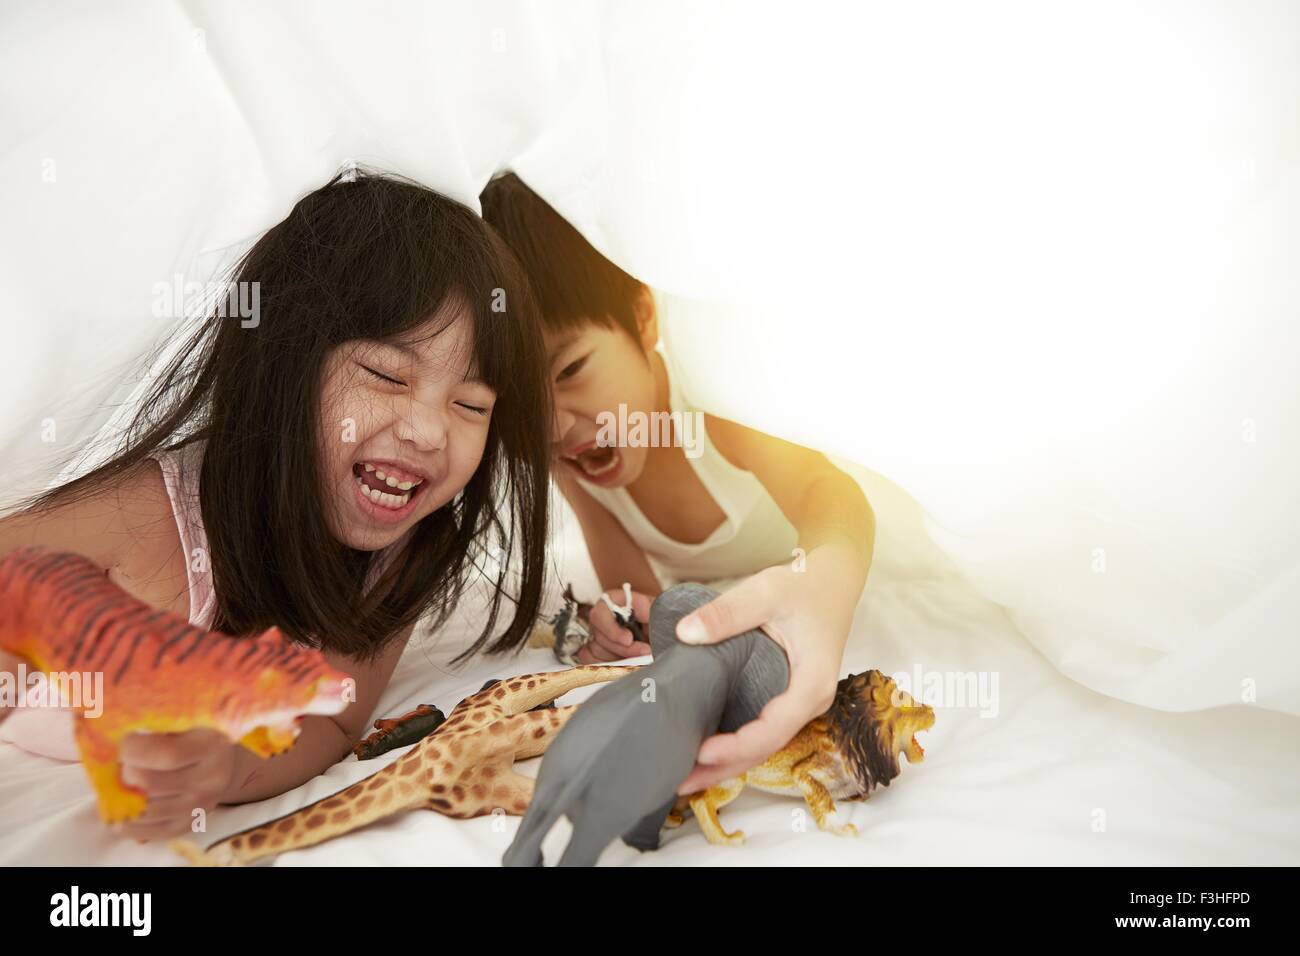 Chinesischen jungen und Mädchen im Bett spielen mit ihren Spielsachen unter der Bettwäsche Stockfoto